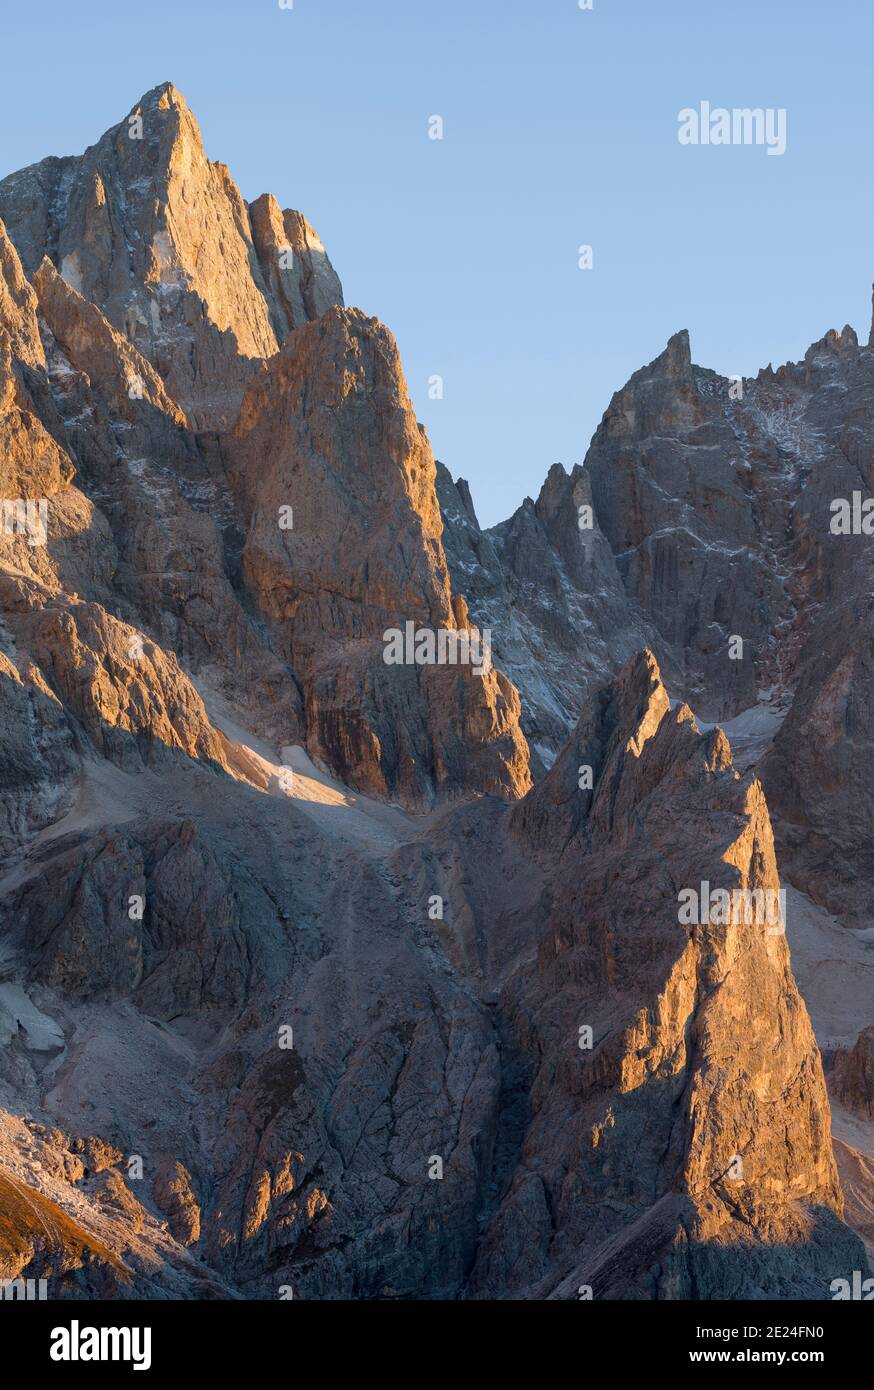 Cima della Vezzana.  Peaks towering over  Val Venegia.  Pala mountain range (Pale di San Martino) in the dolomites of Trentino. Pala is part of the UN Stock Photo